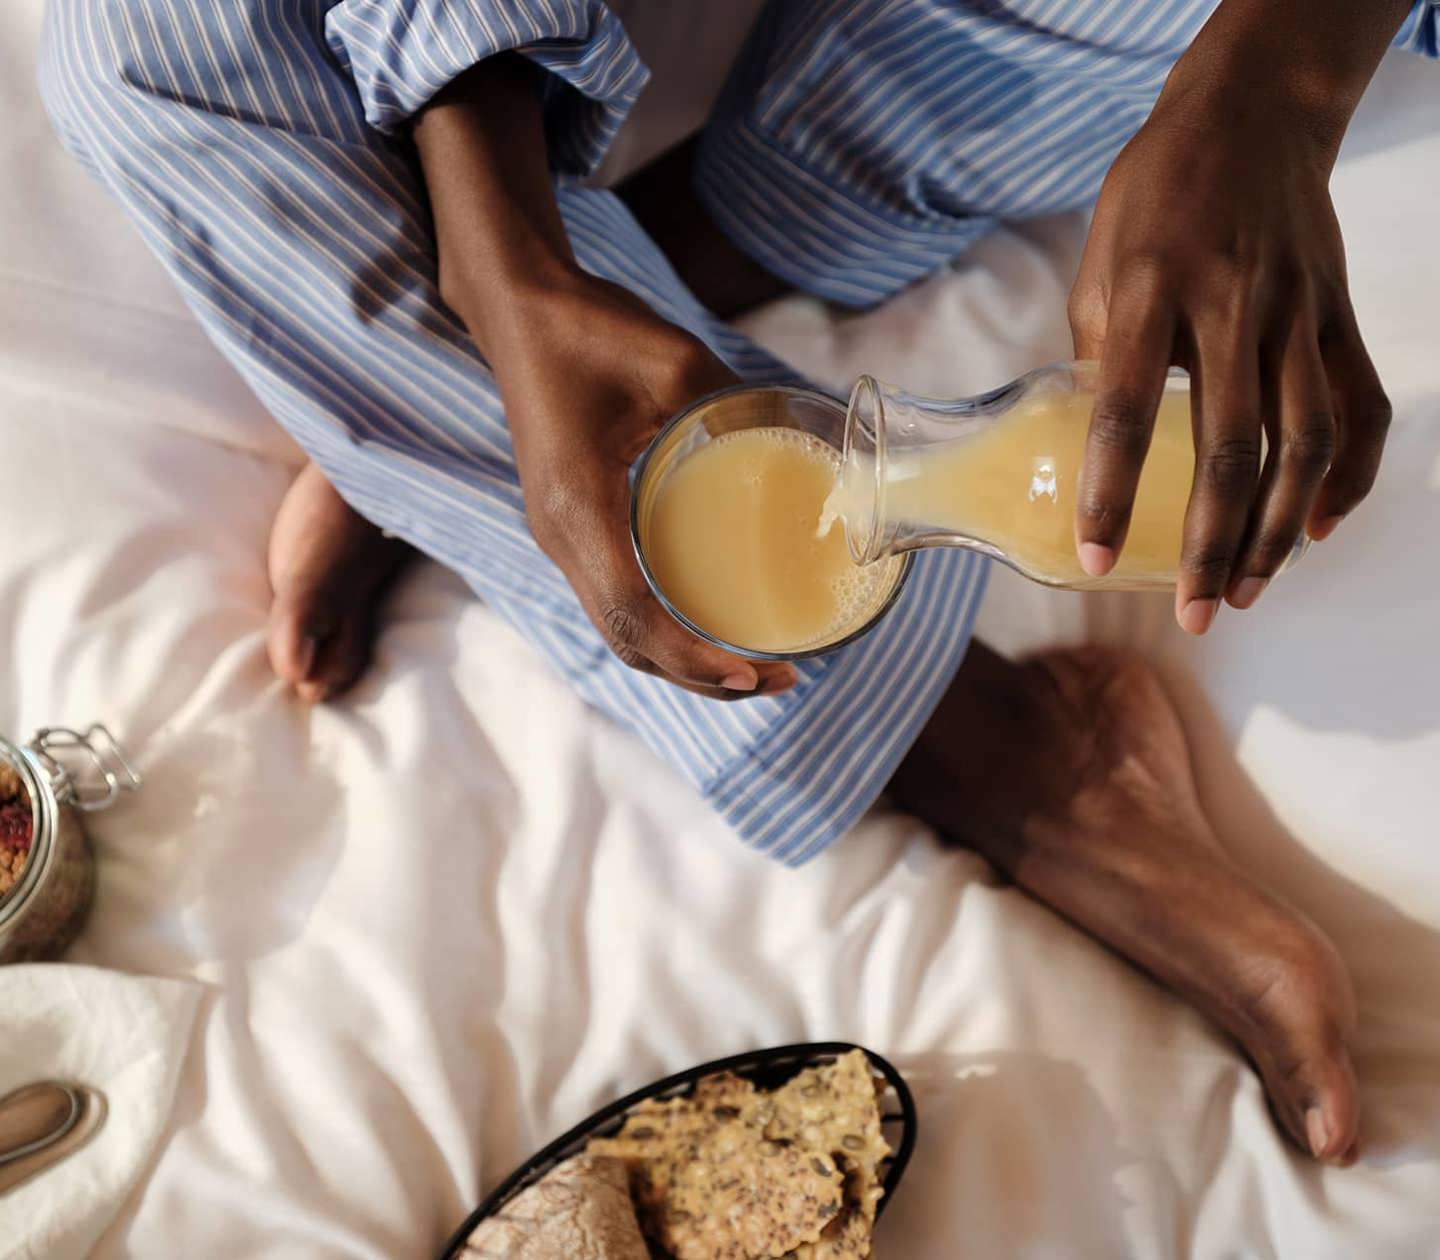 Woman in a bed having breakfast